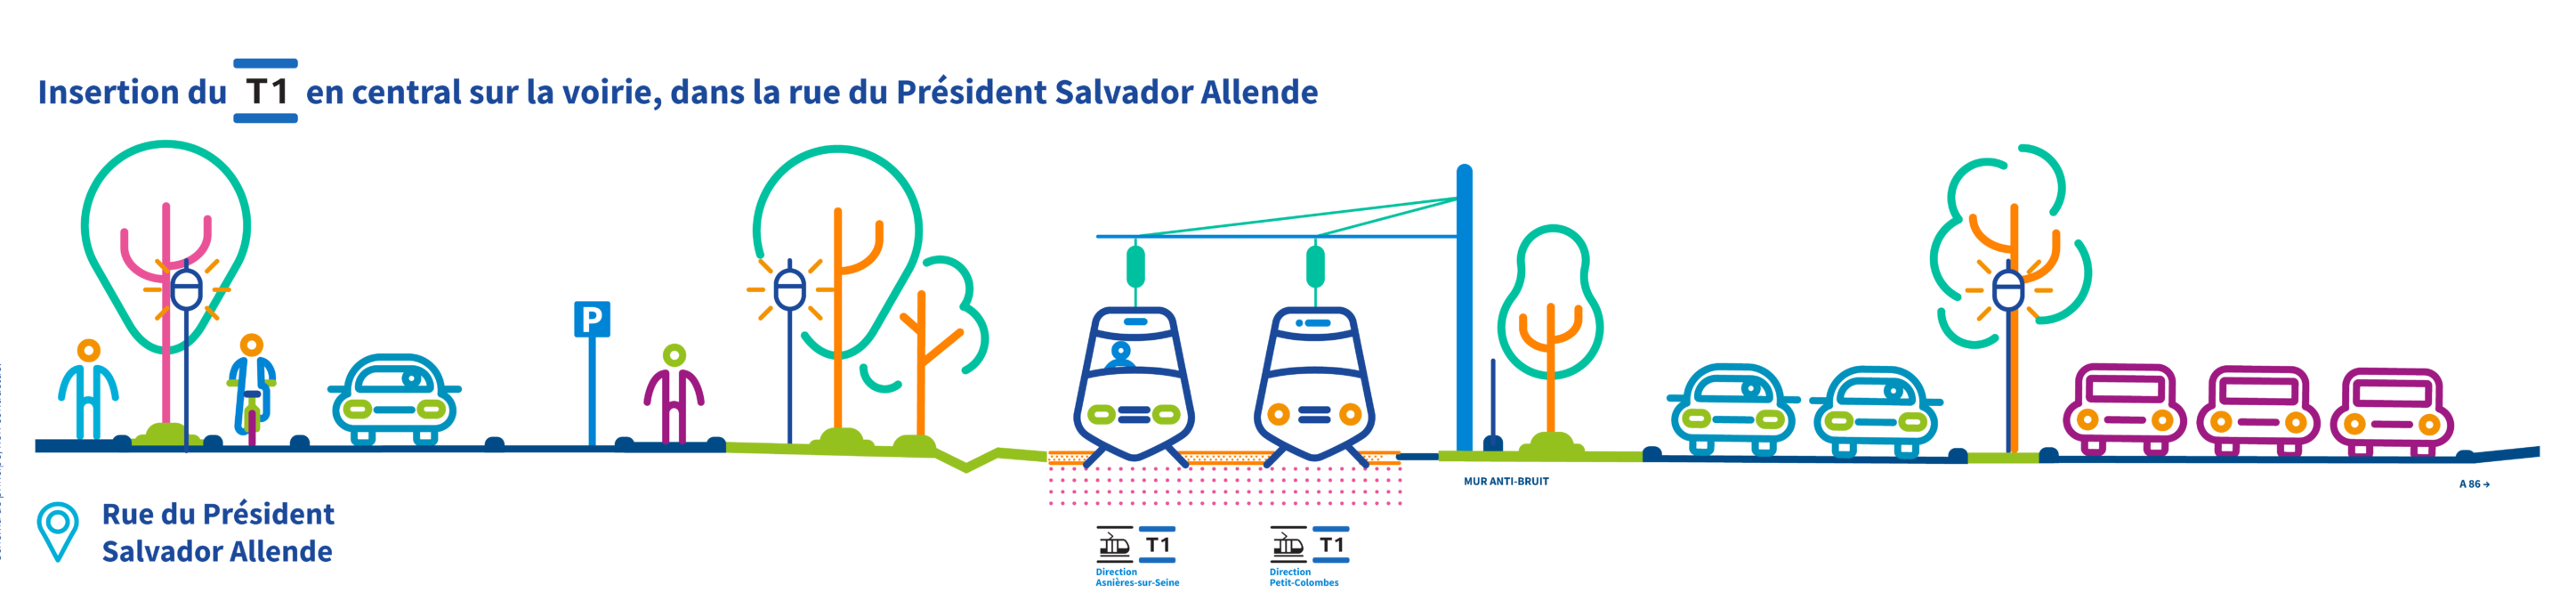 Schéma d’insertion : Carrefour de la rue du Président Salvador Allende